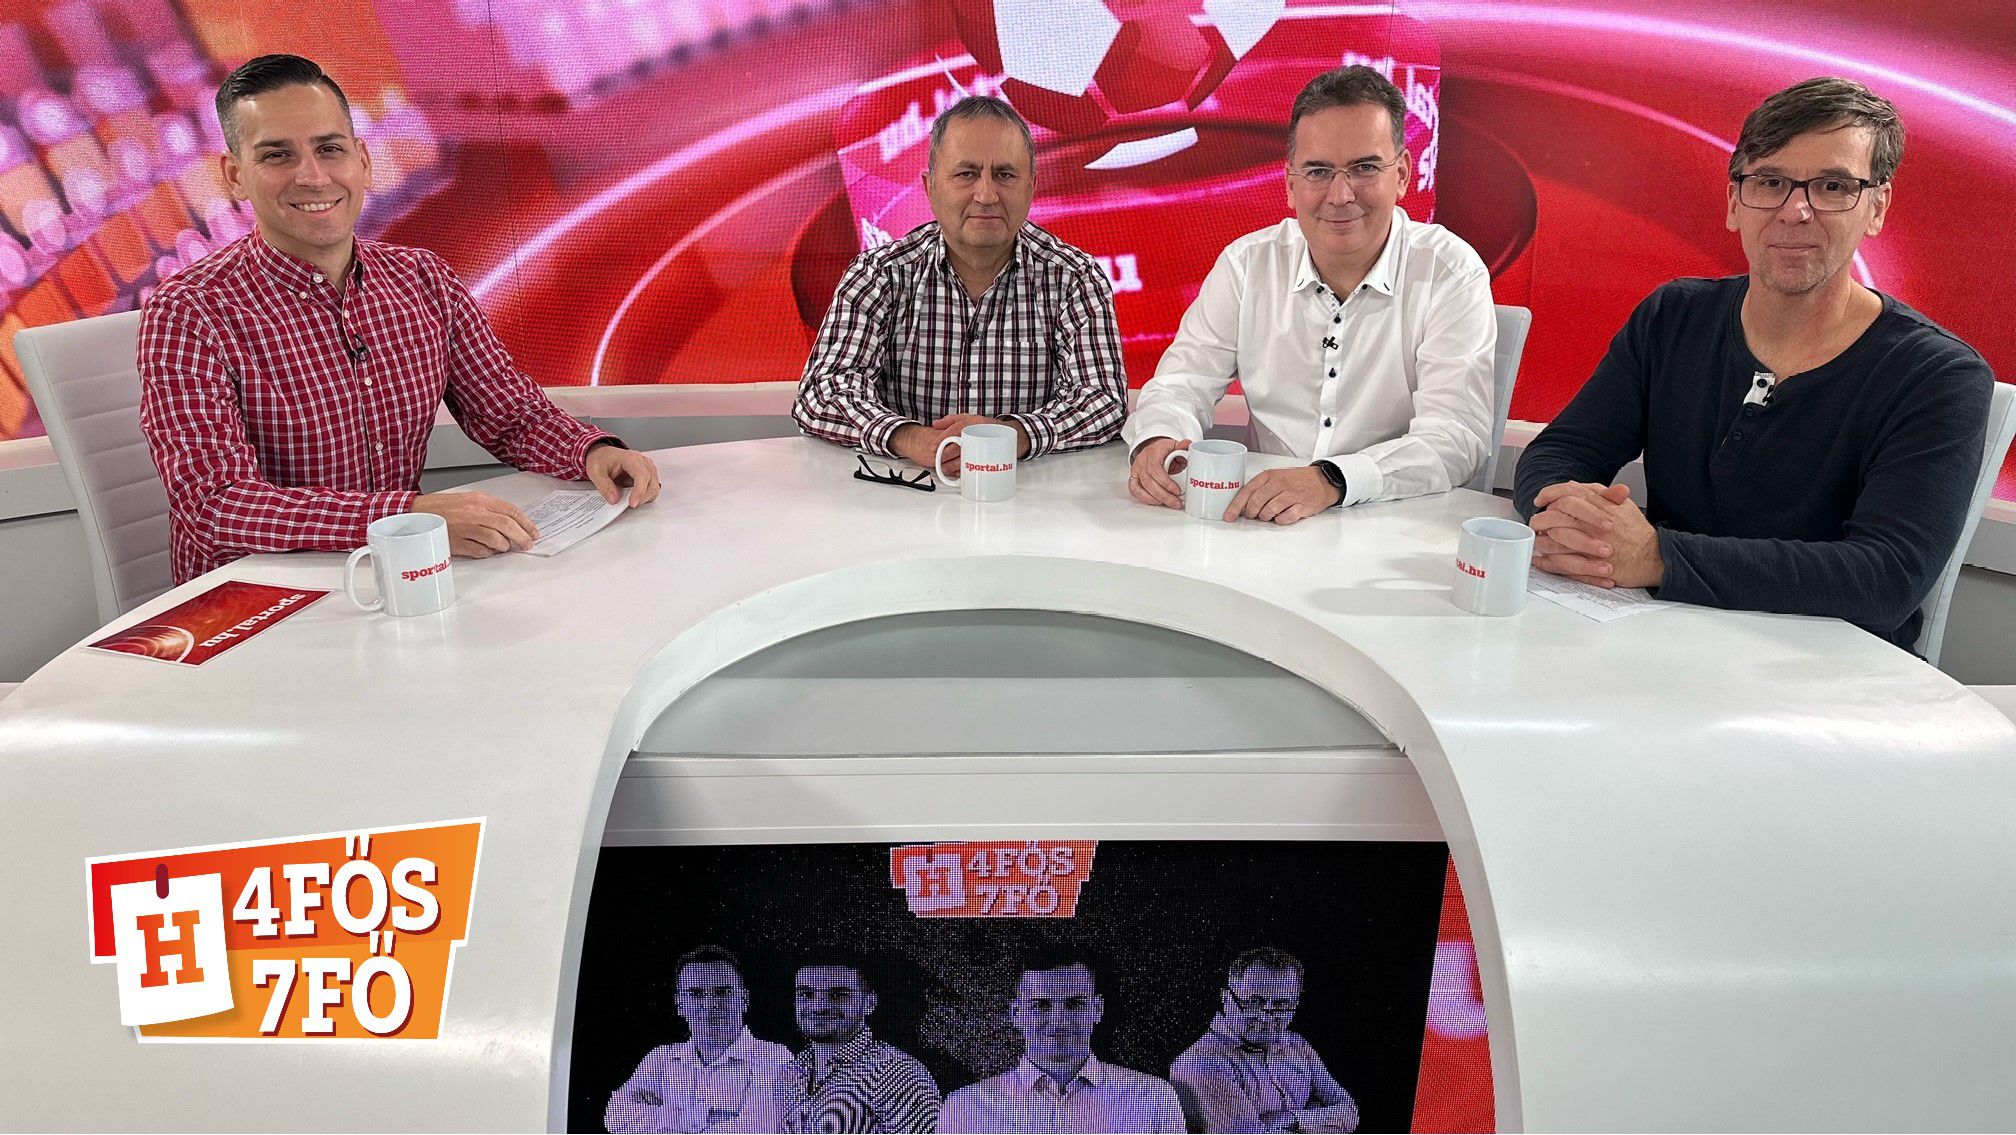 A Sportál Tv stúdiójában: Cselleng Ádám, Szekeres Tamás, Kecskés István és Somos Zoltán